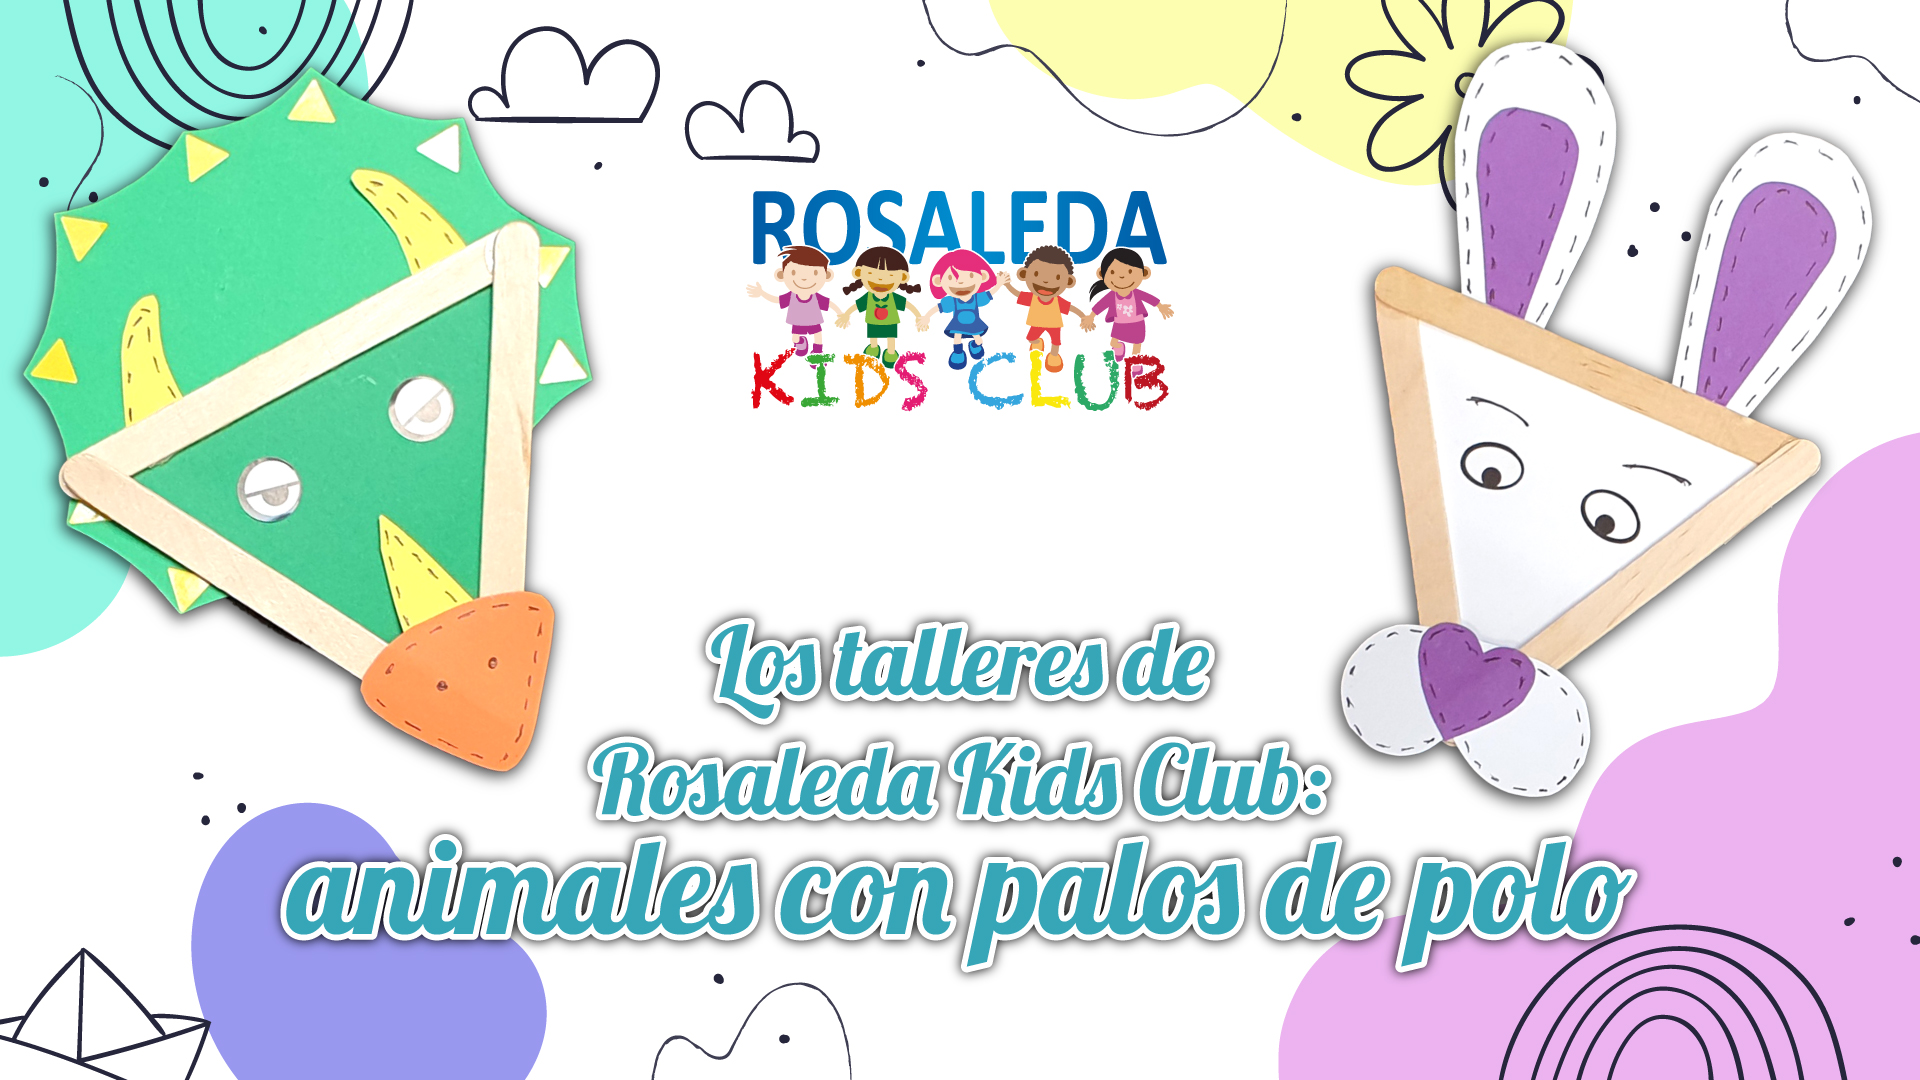 Rosaleda Kids Club: animales con palos de polo